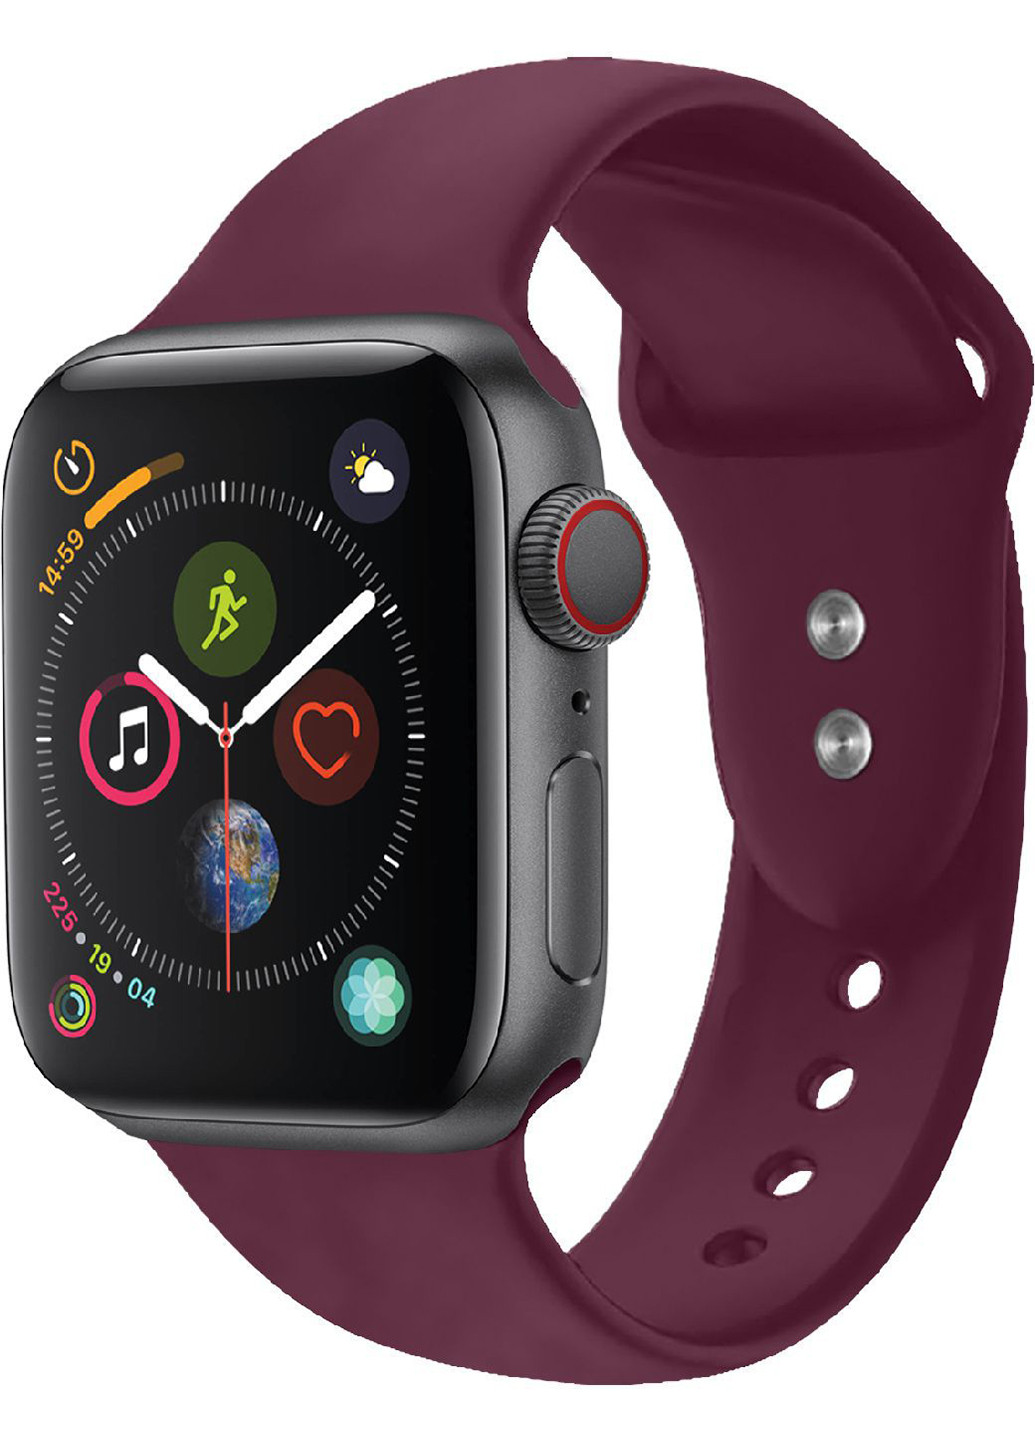 Силиконовый ремешок Oryx-38ML для Apple Watch 38-40 мм 1/2/3/4/5/6/SE Promate oryx-38ml.maroon (216034119)